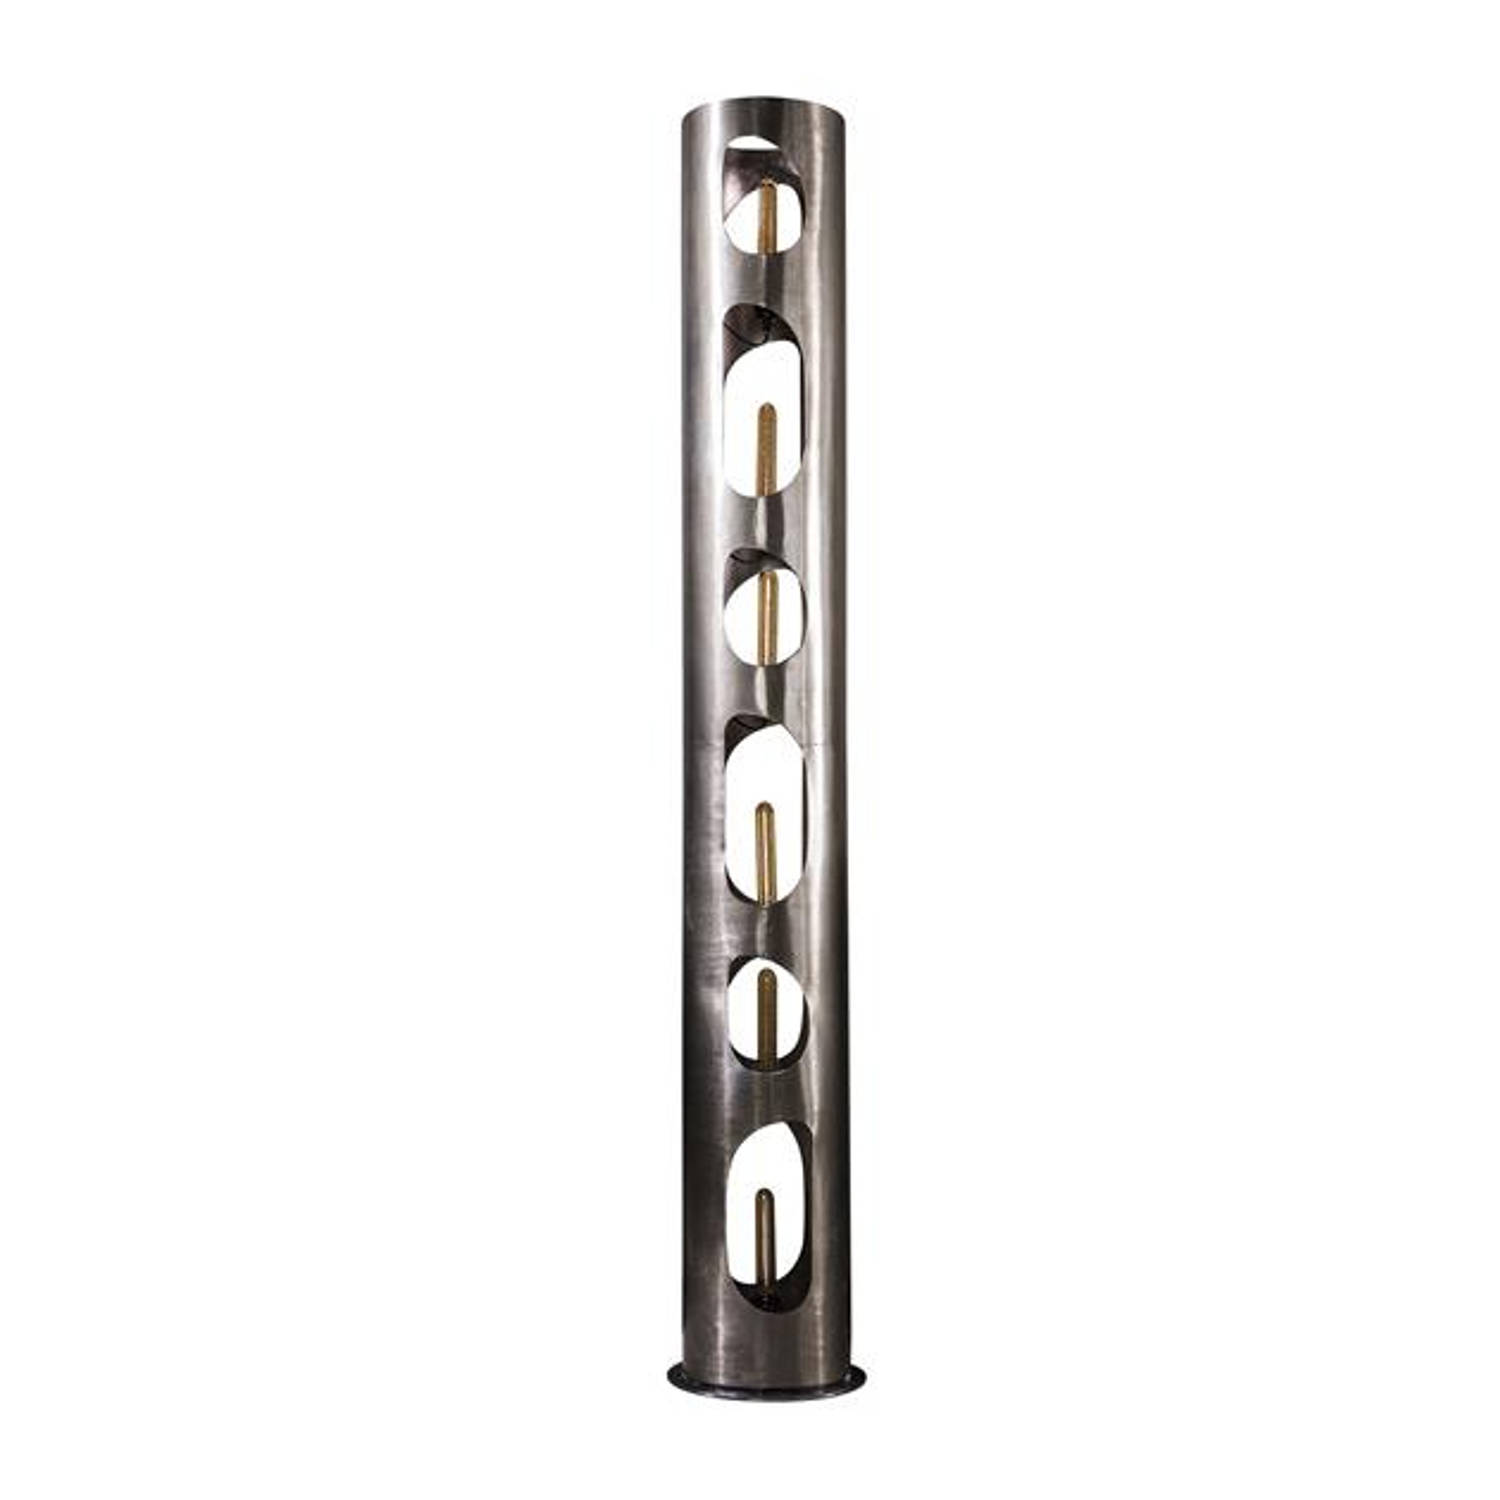 Giga Meubel - Vloerlamp Cilinder - Zwart Metaal - 25x25x187cm